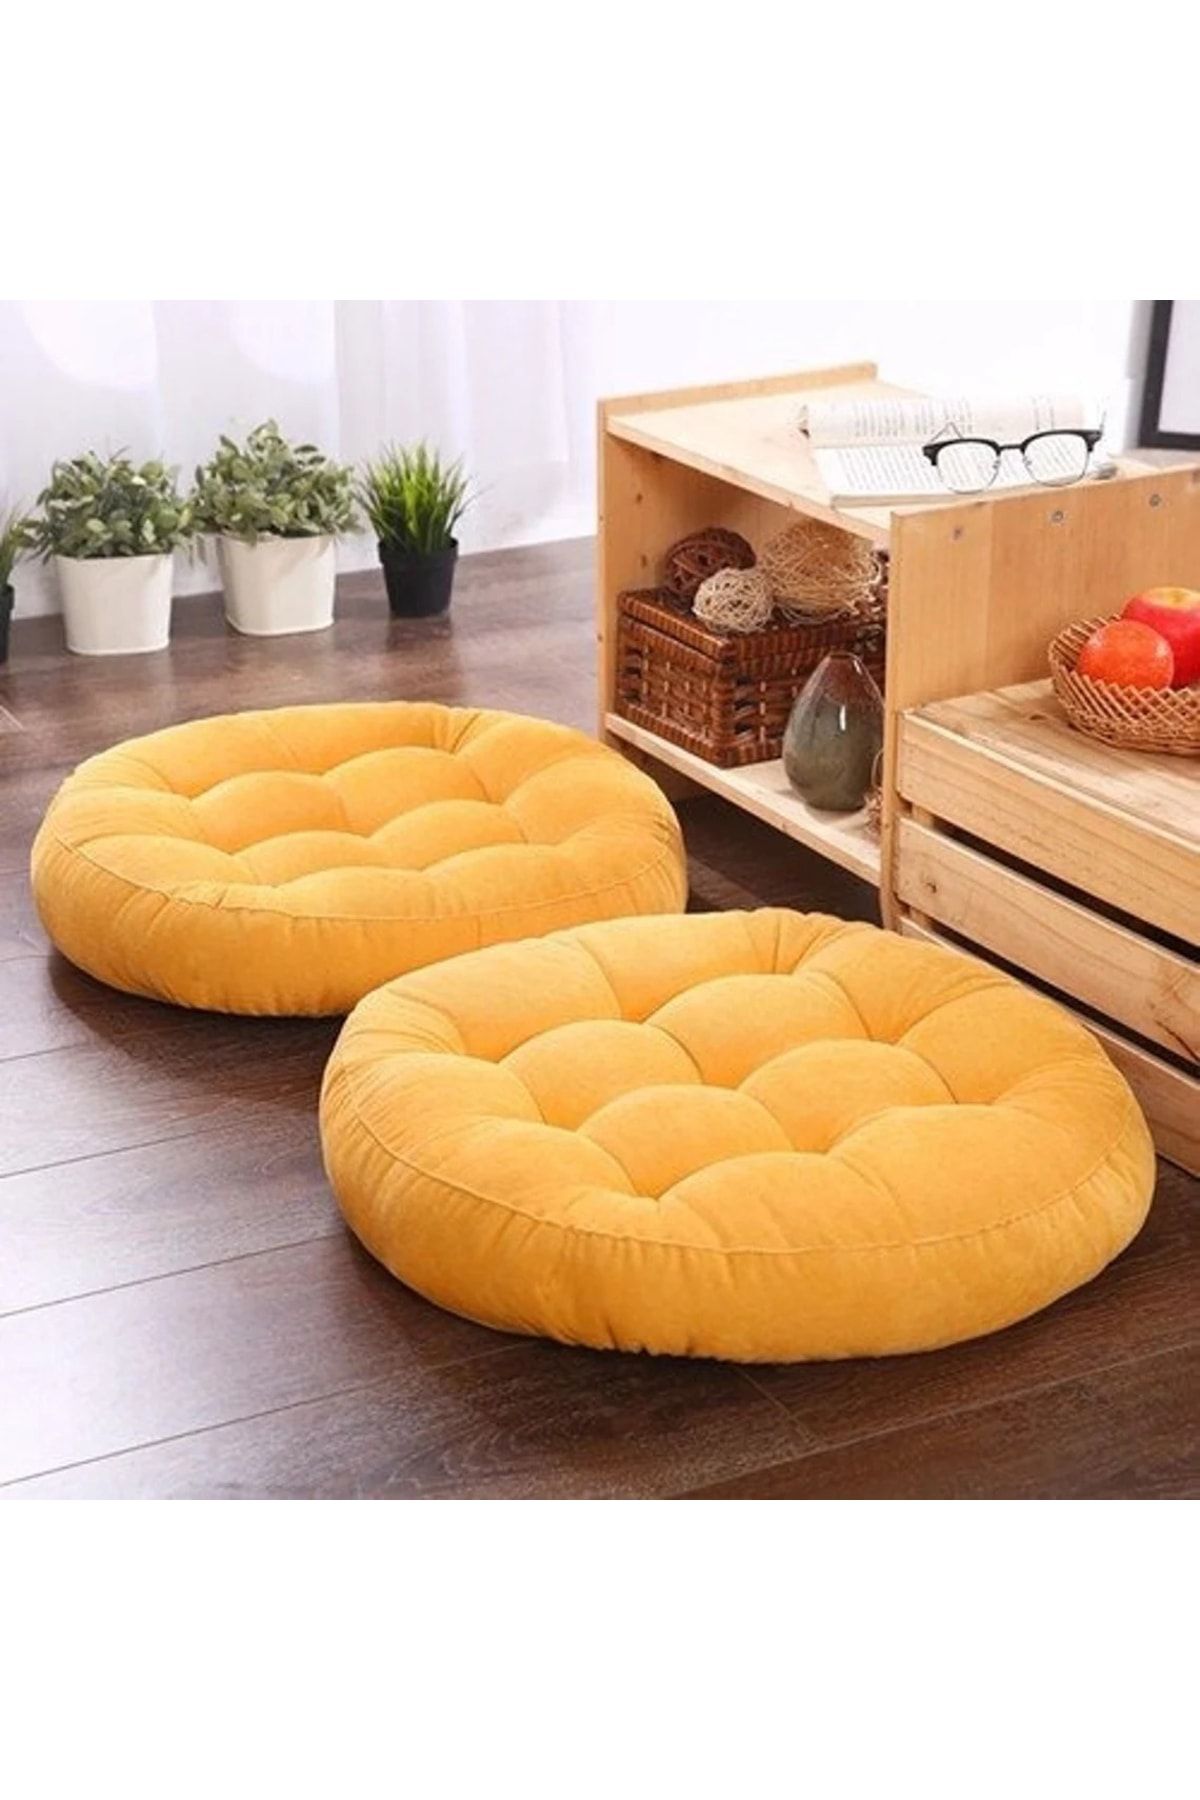 пуфики подушки для сидения на полу